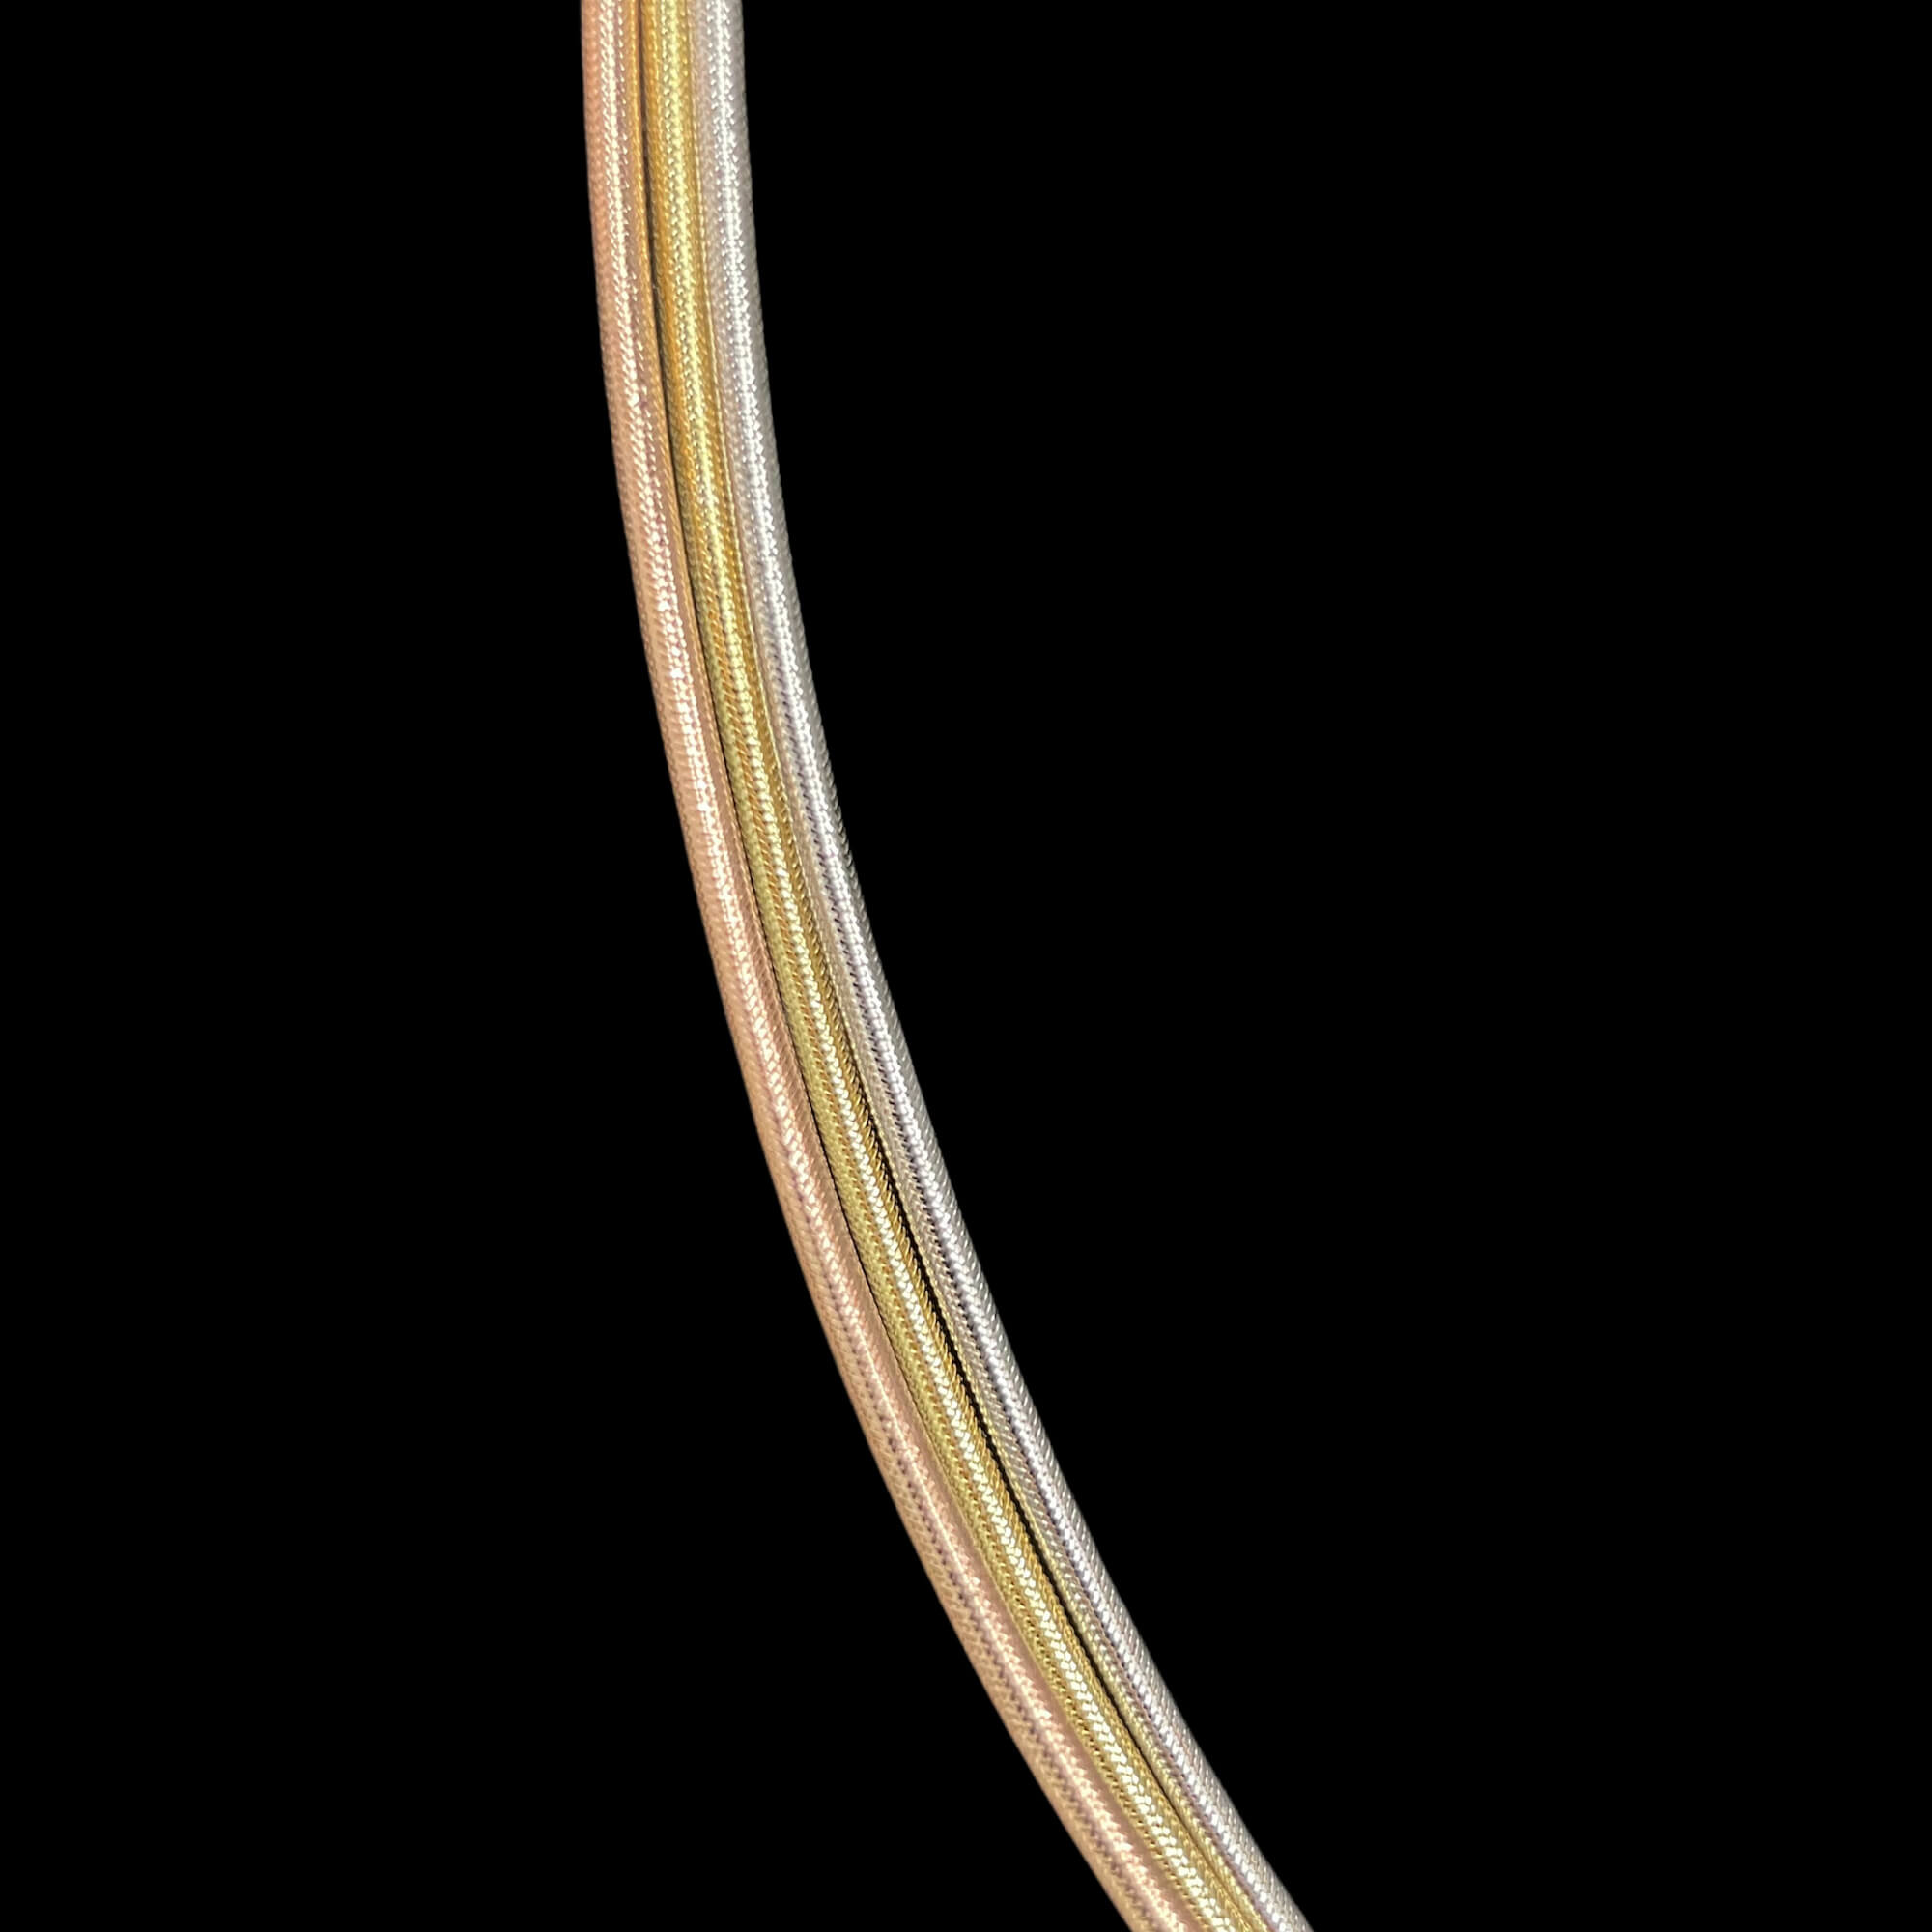 Drei -Draht -Omega -Armband von 3 -Lokern Gold 18KT und Silikon